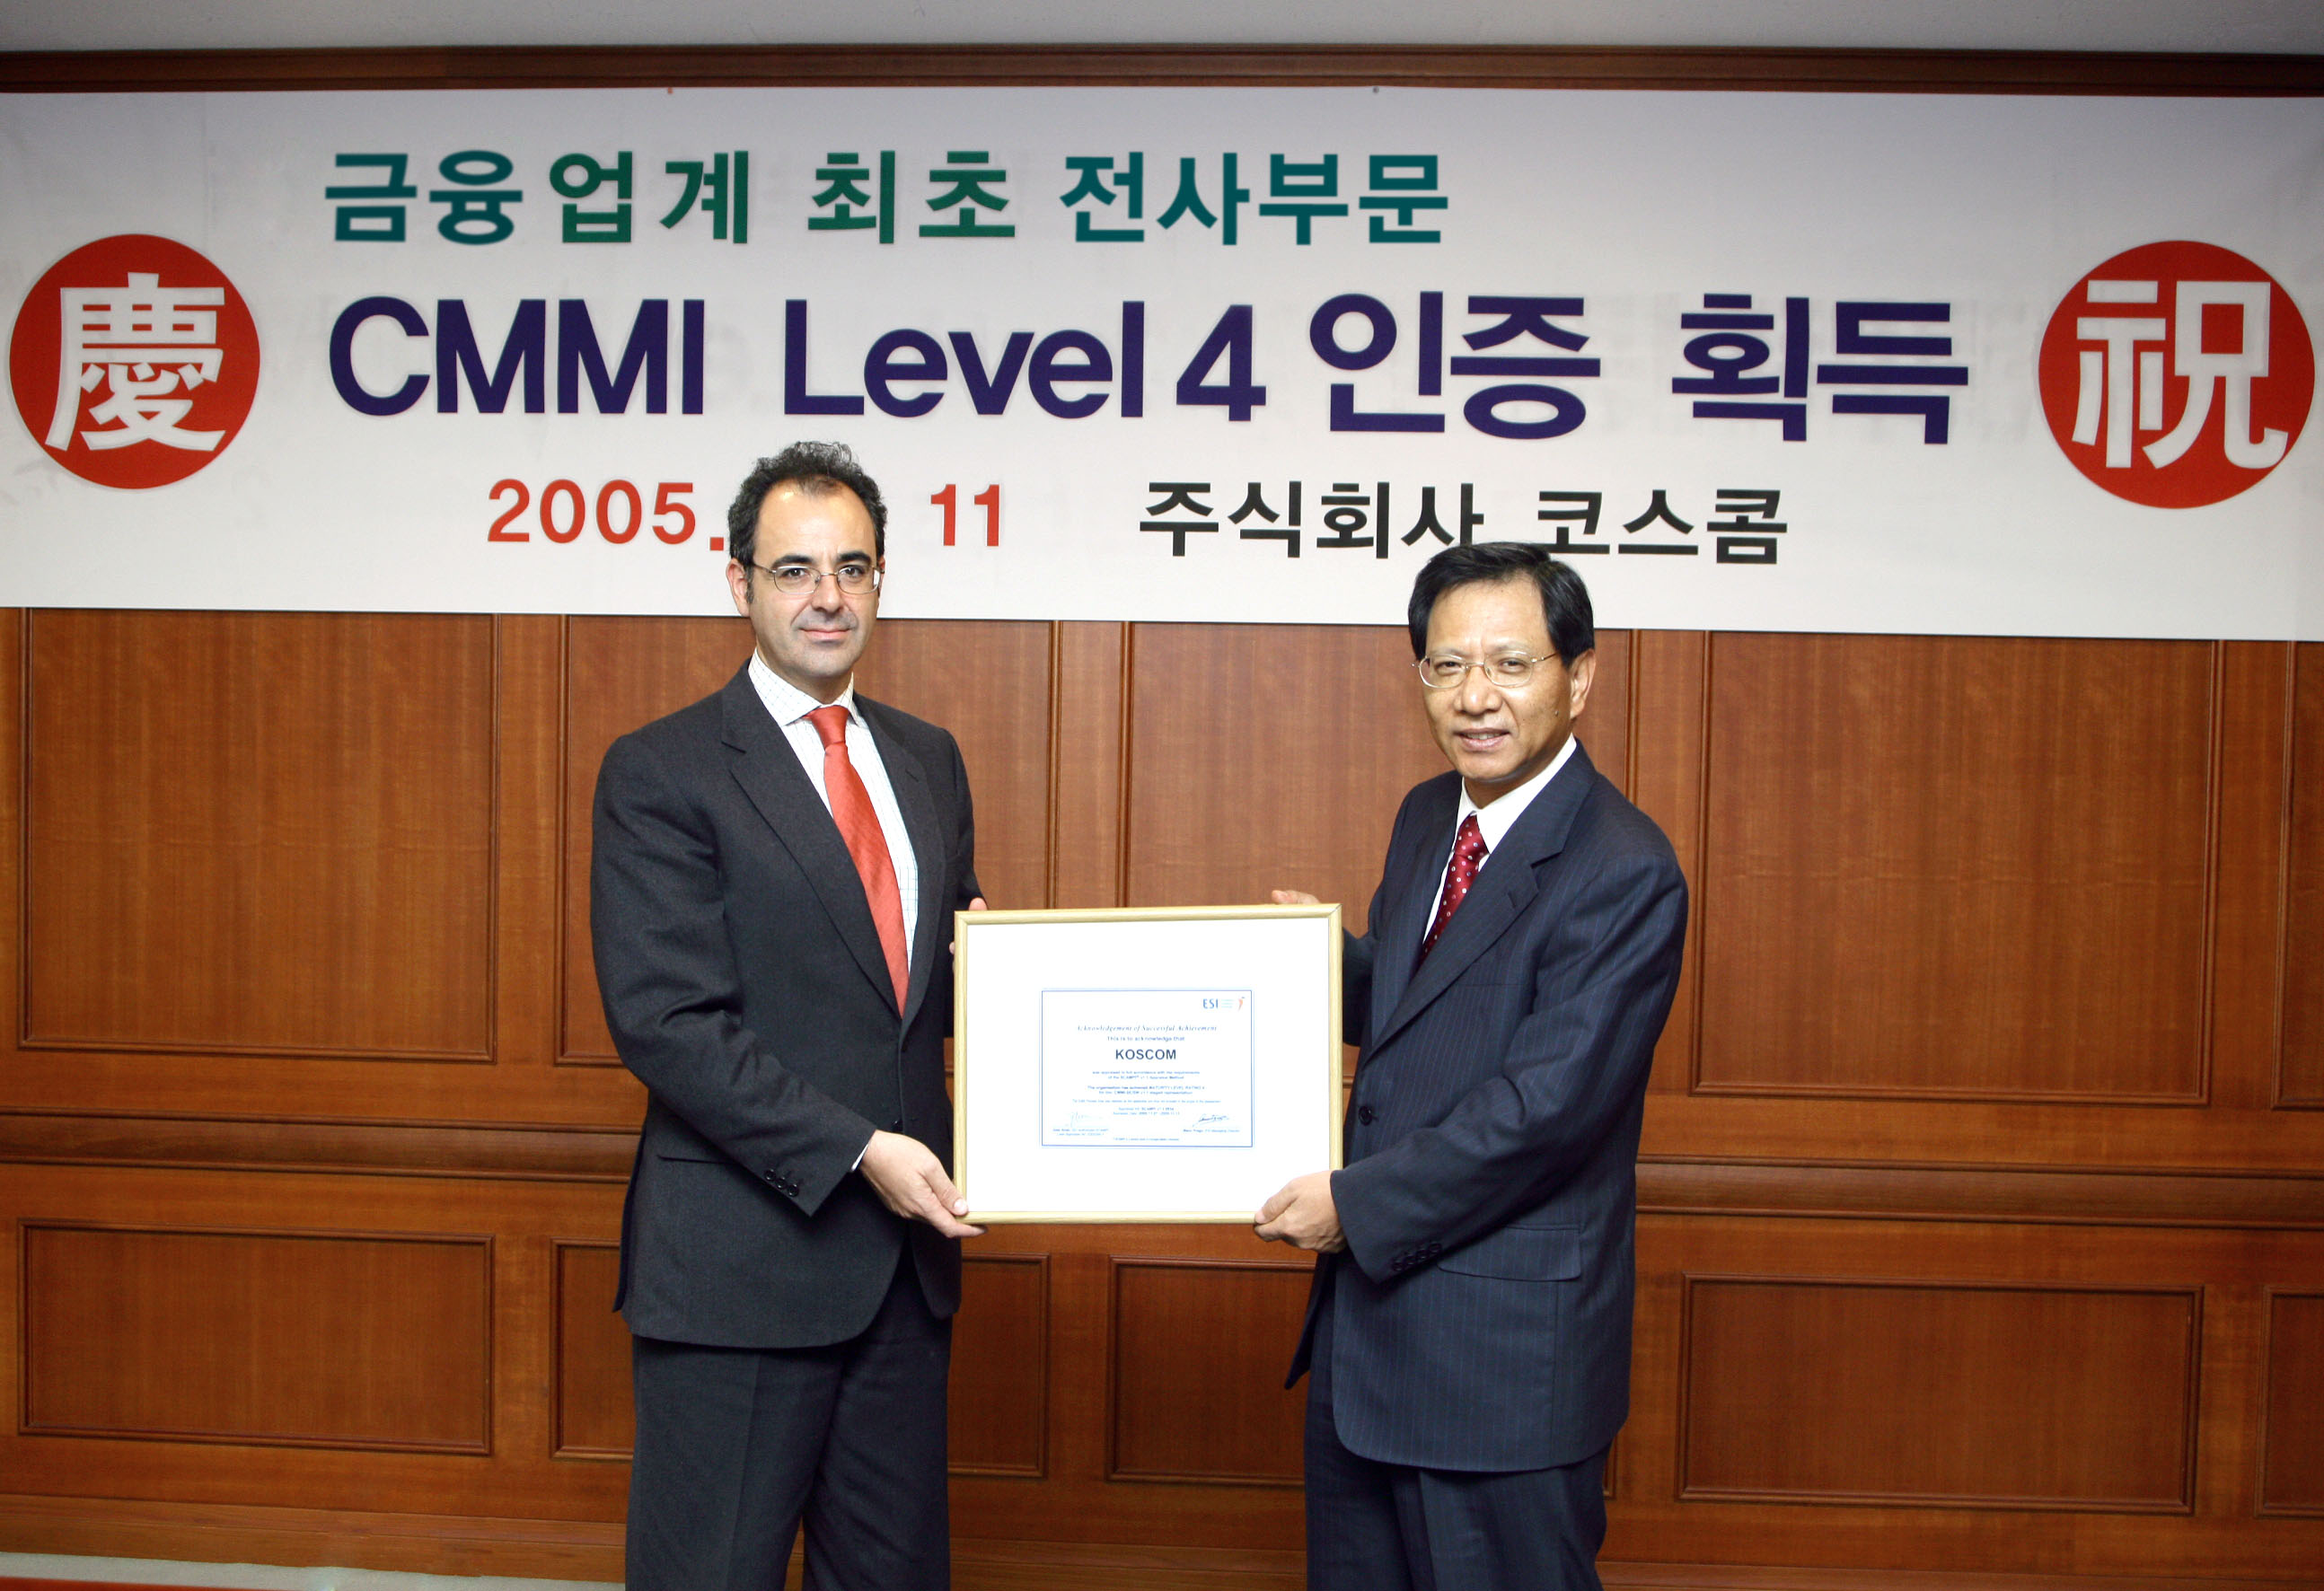 금융권 최초 전사부문 CMMI 레벨4 획득(2005.11)